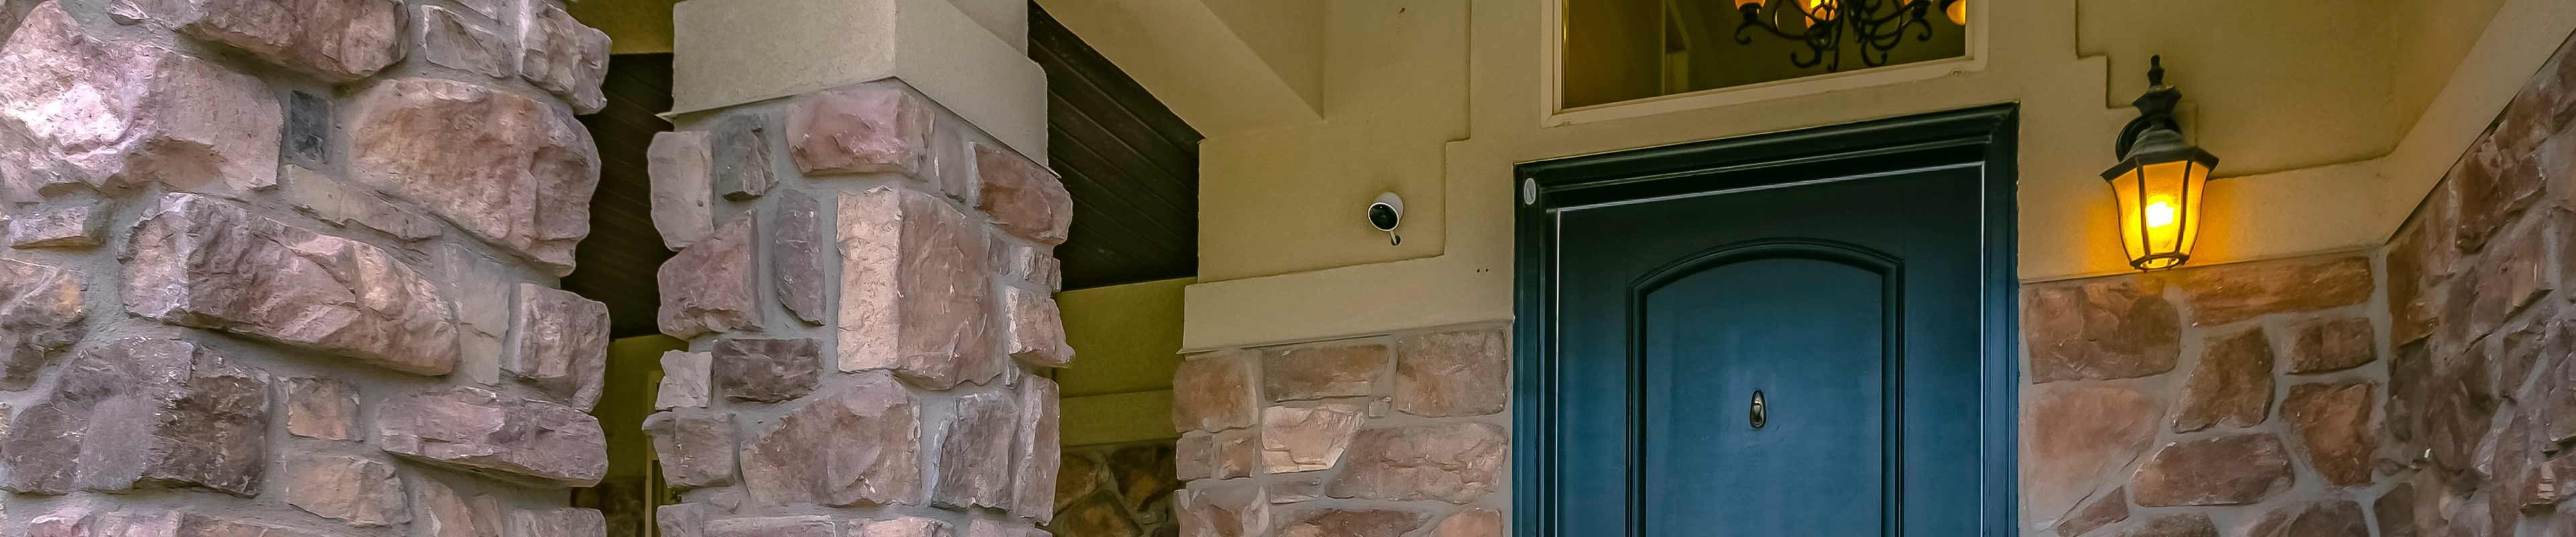 Security Camera Above Front Door